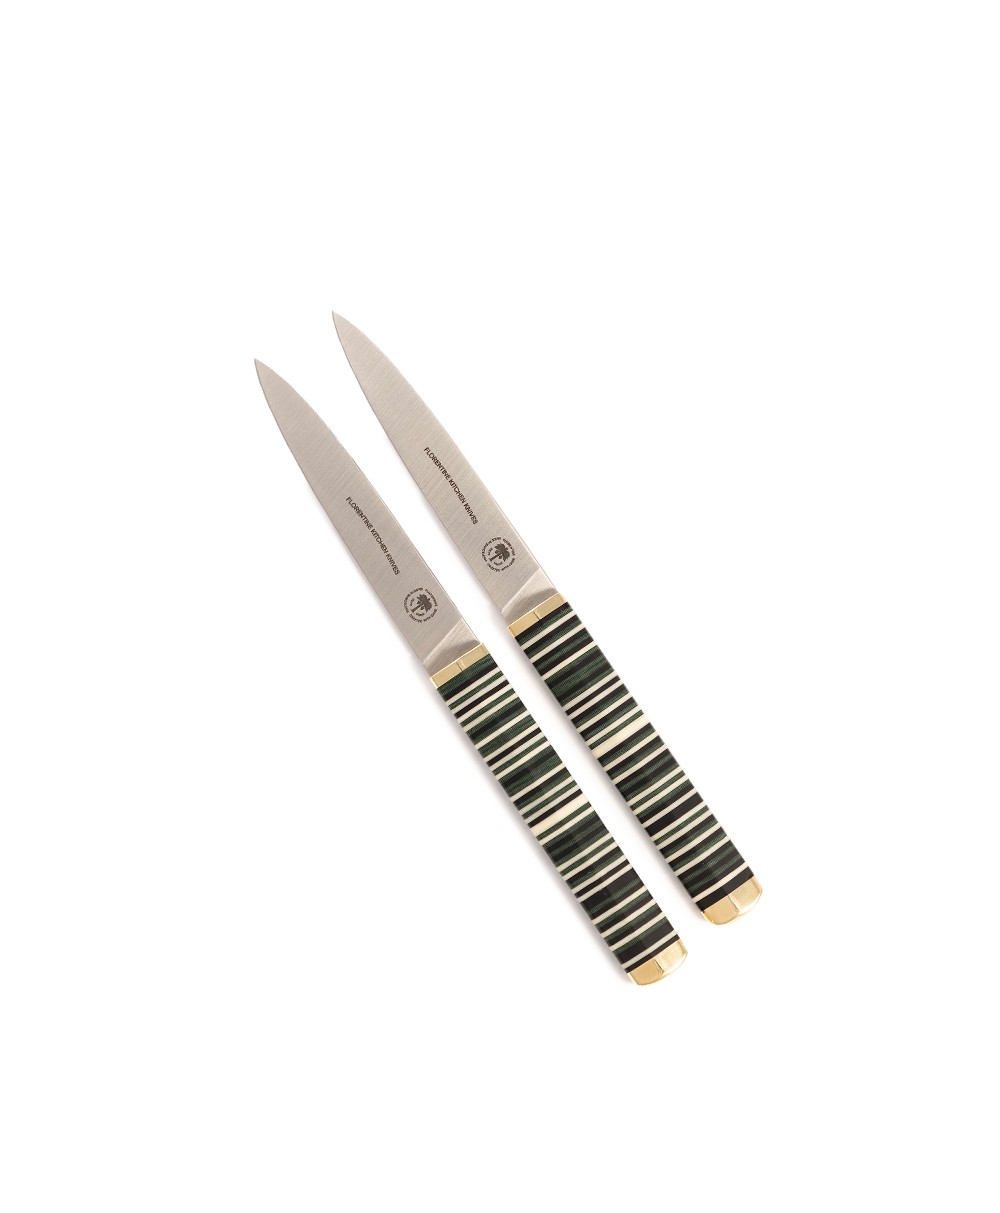 Produktbild des Florentine Table Knife in green von Florentine Kitchen Knives im RAUM concept store 